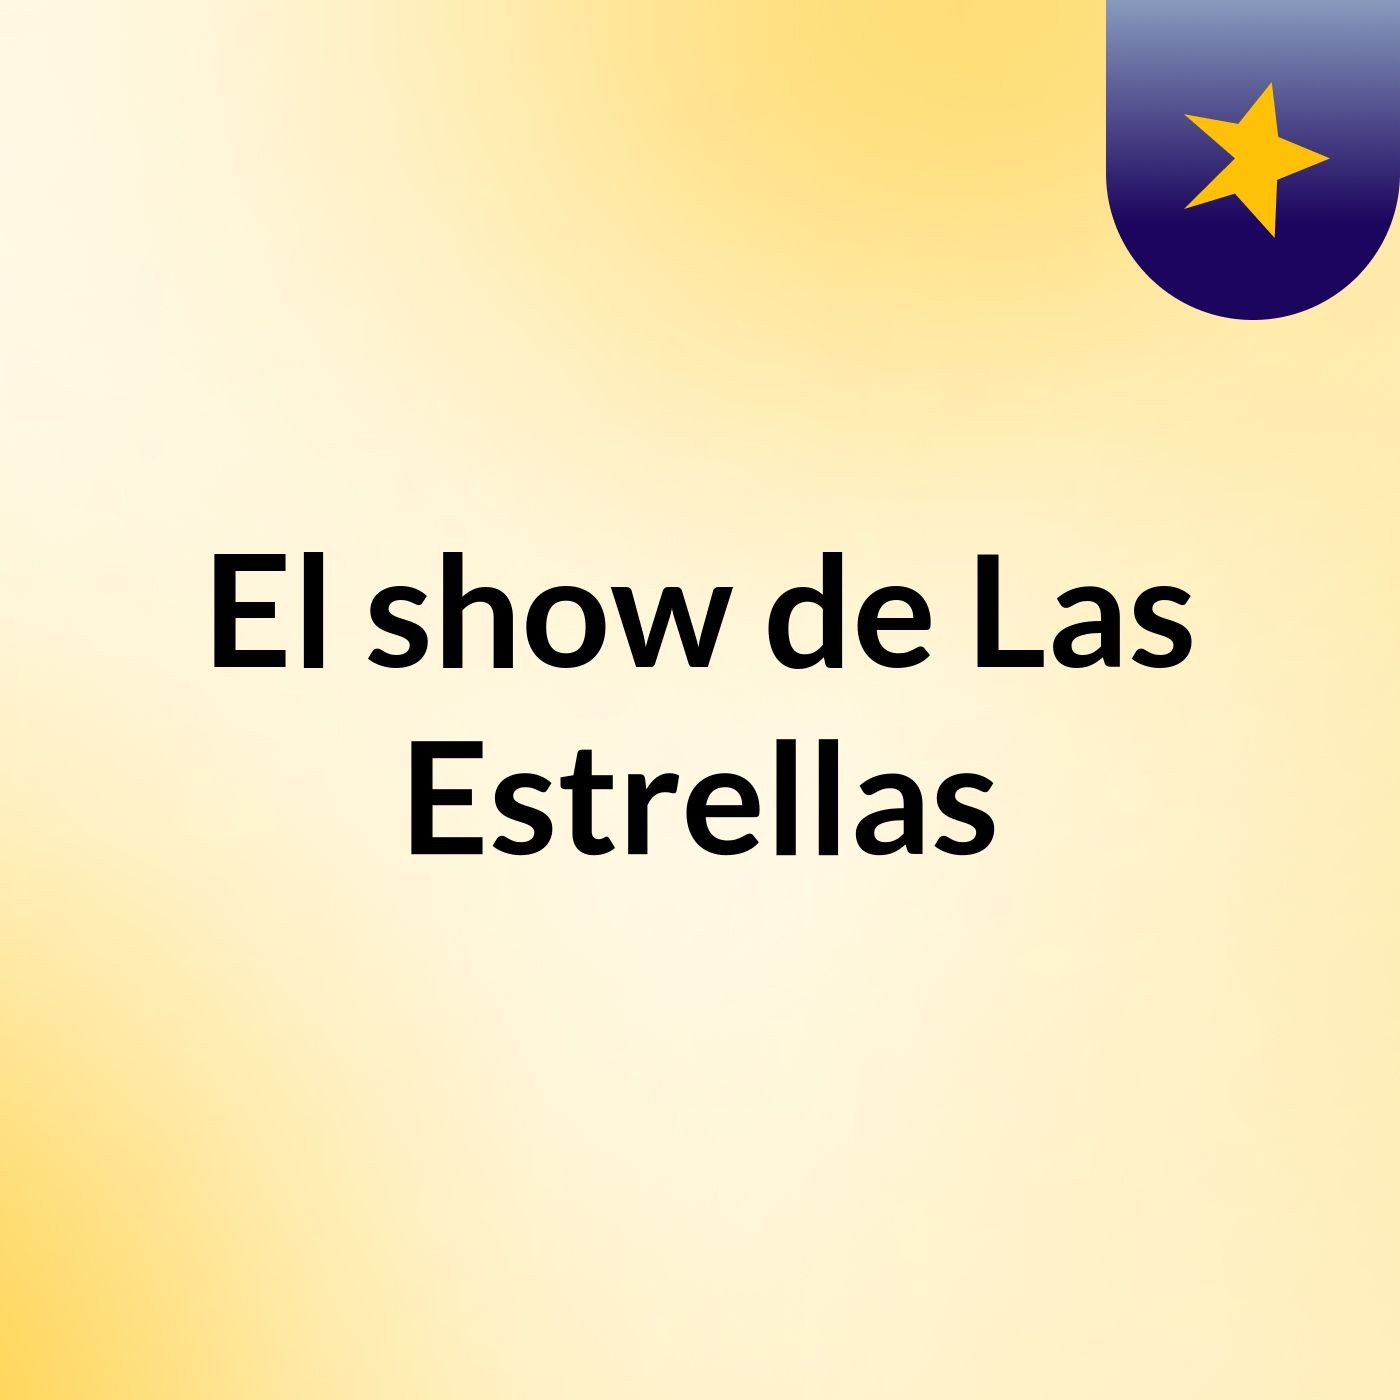 El show de Las Estrellas